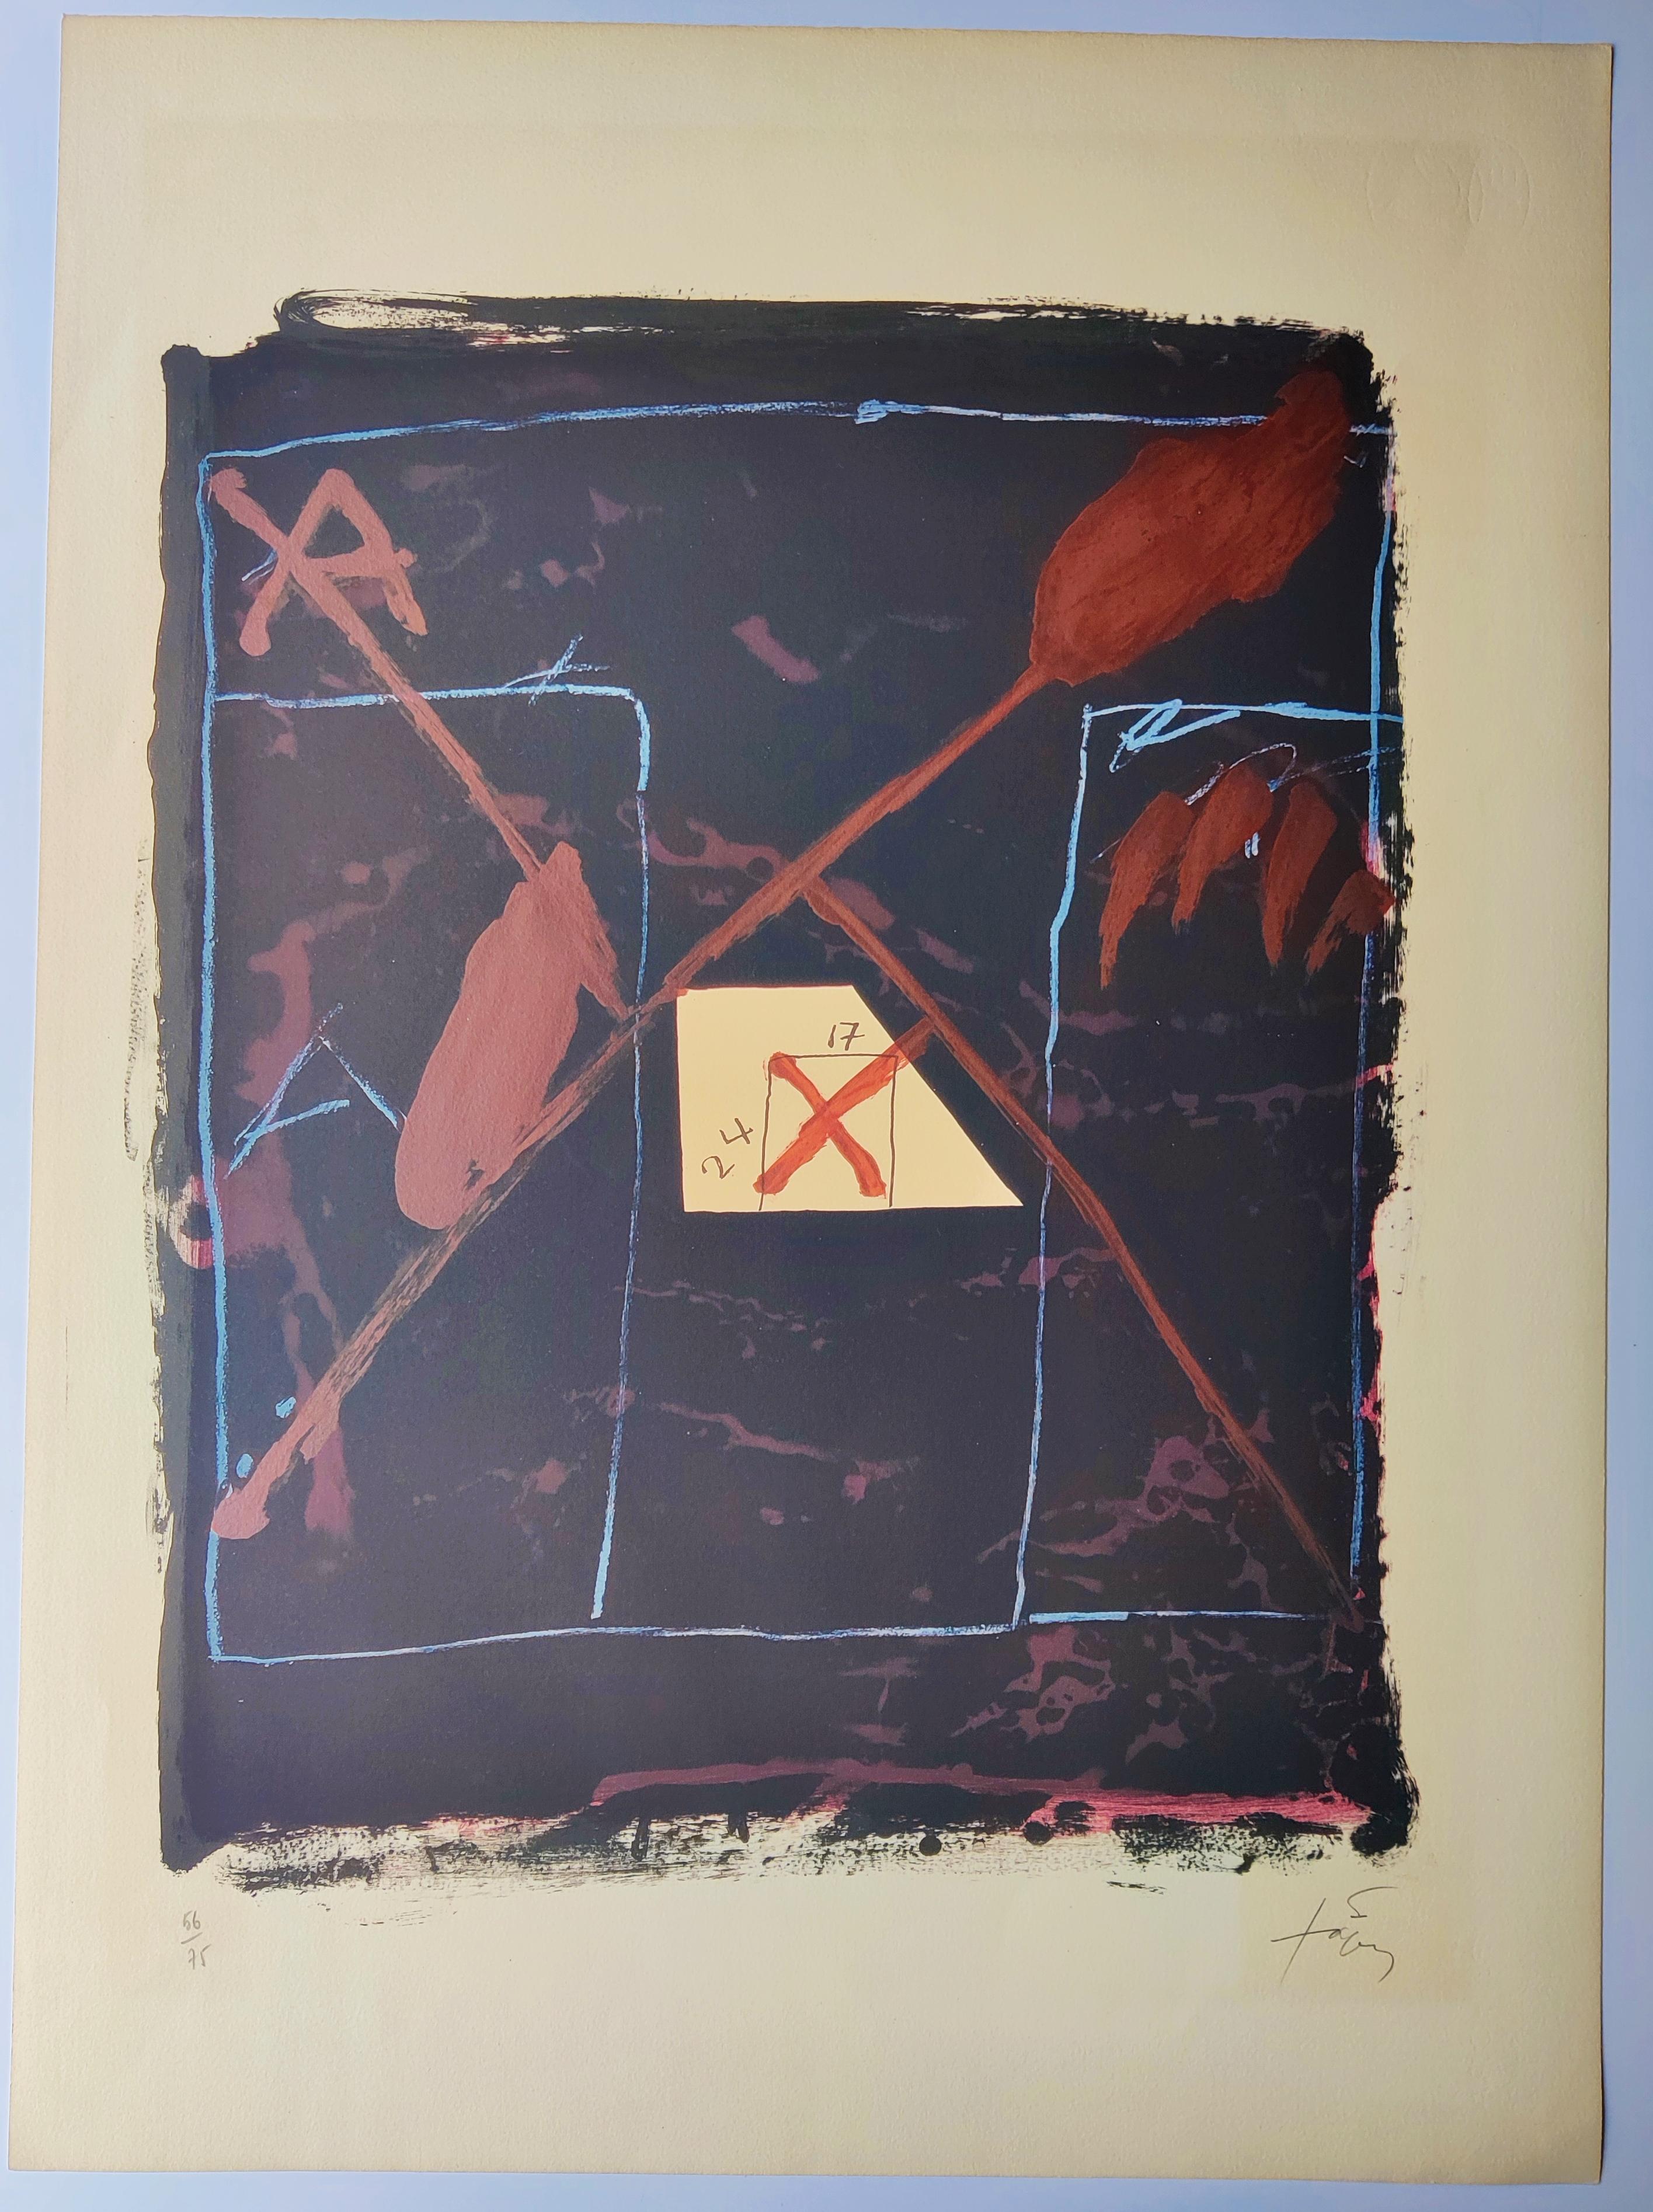 Antoni TAPIES 
24 sur 17, 1976
Lithographie 
Edition 56/75 en bas à gauche
Signé en bas à droite
Feuille 76 X 55,5 cm
Littérature : Galfetti 624